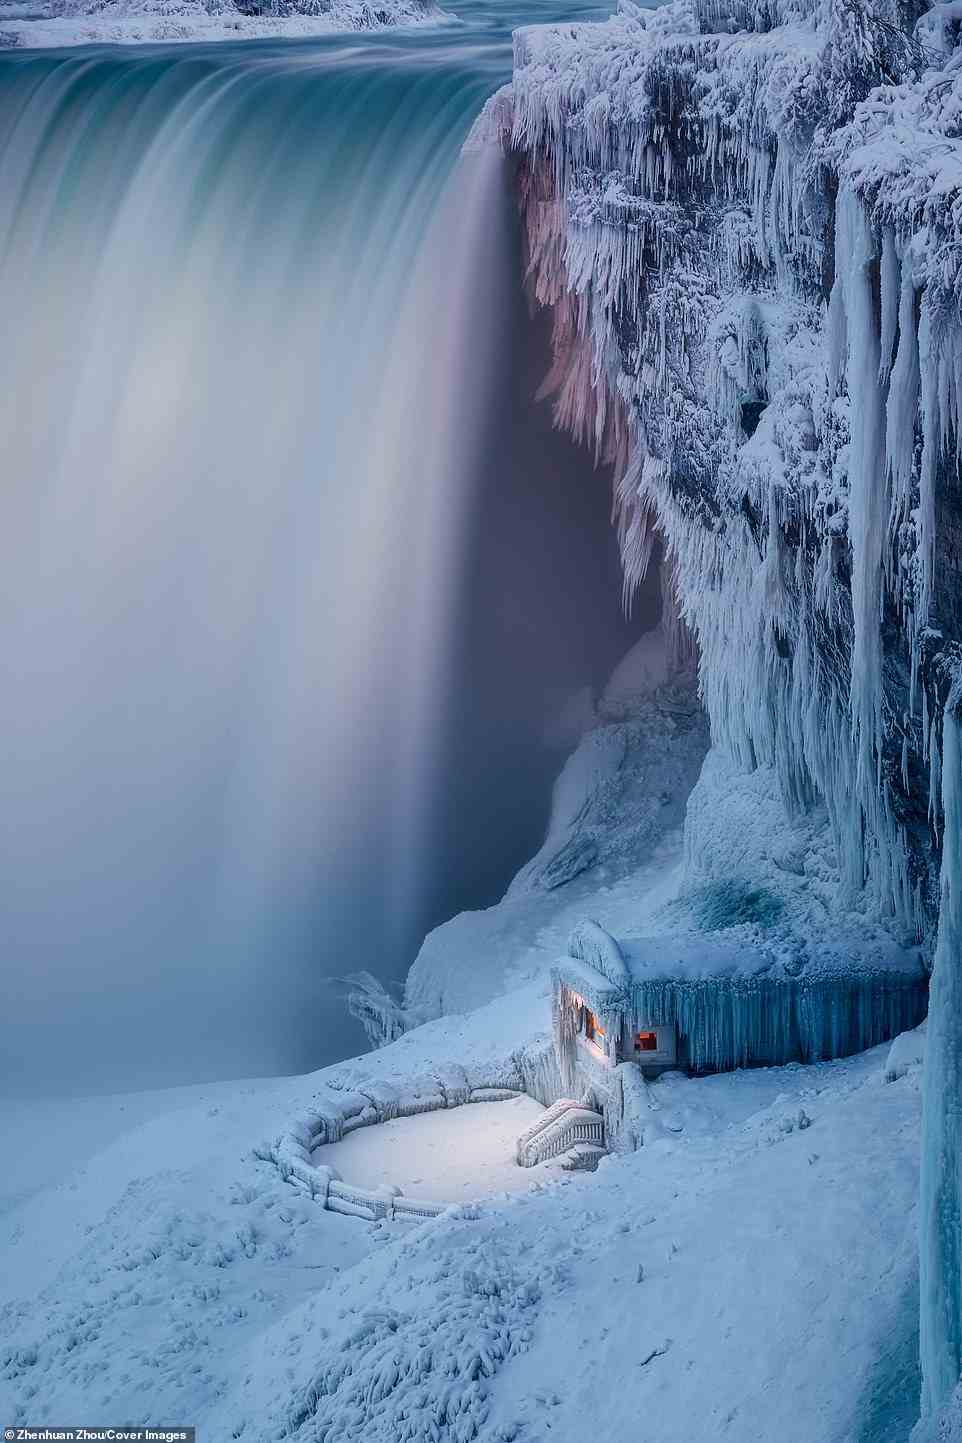 Der zweite Preis ging an Zhenhuan Zhous „Frozen“ für sein atemberaubendes Bild der Niagarafälle